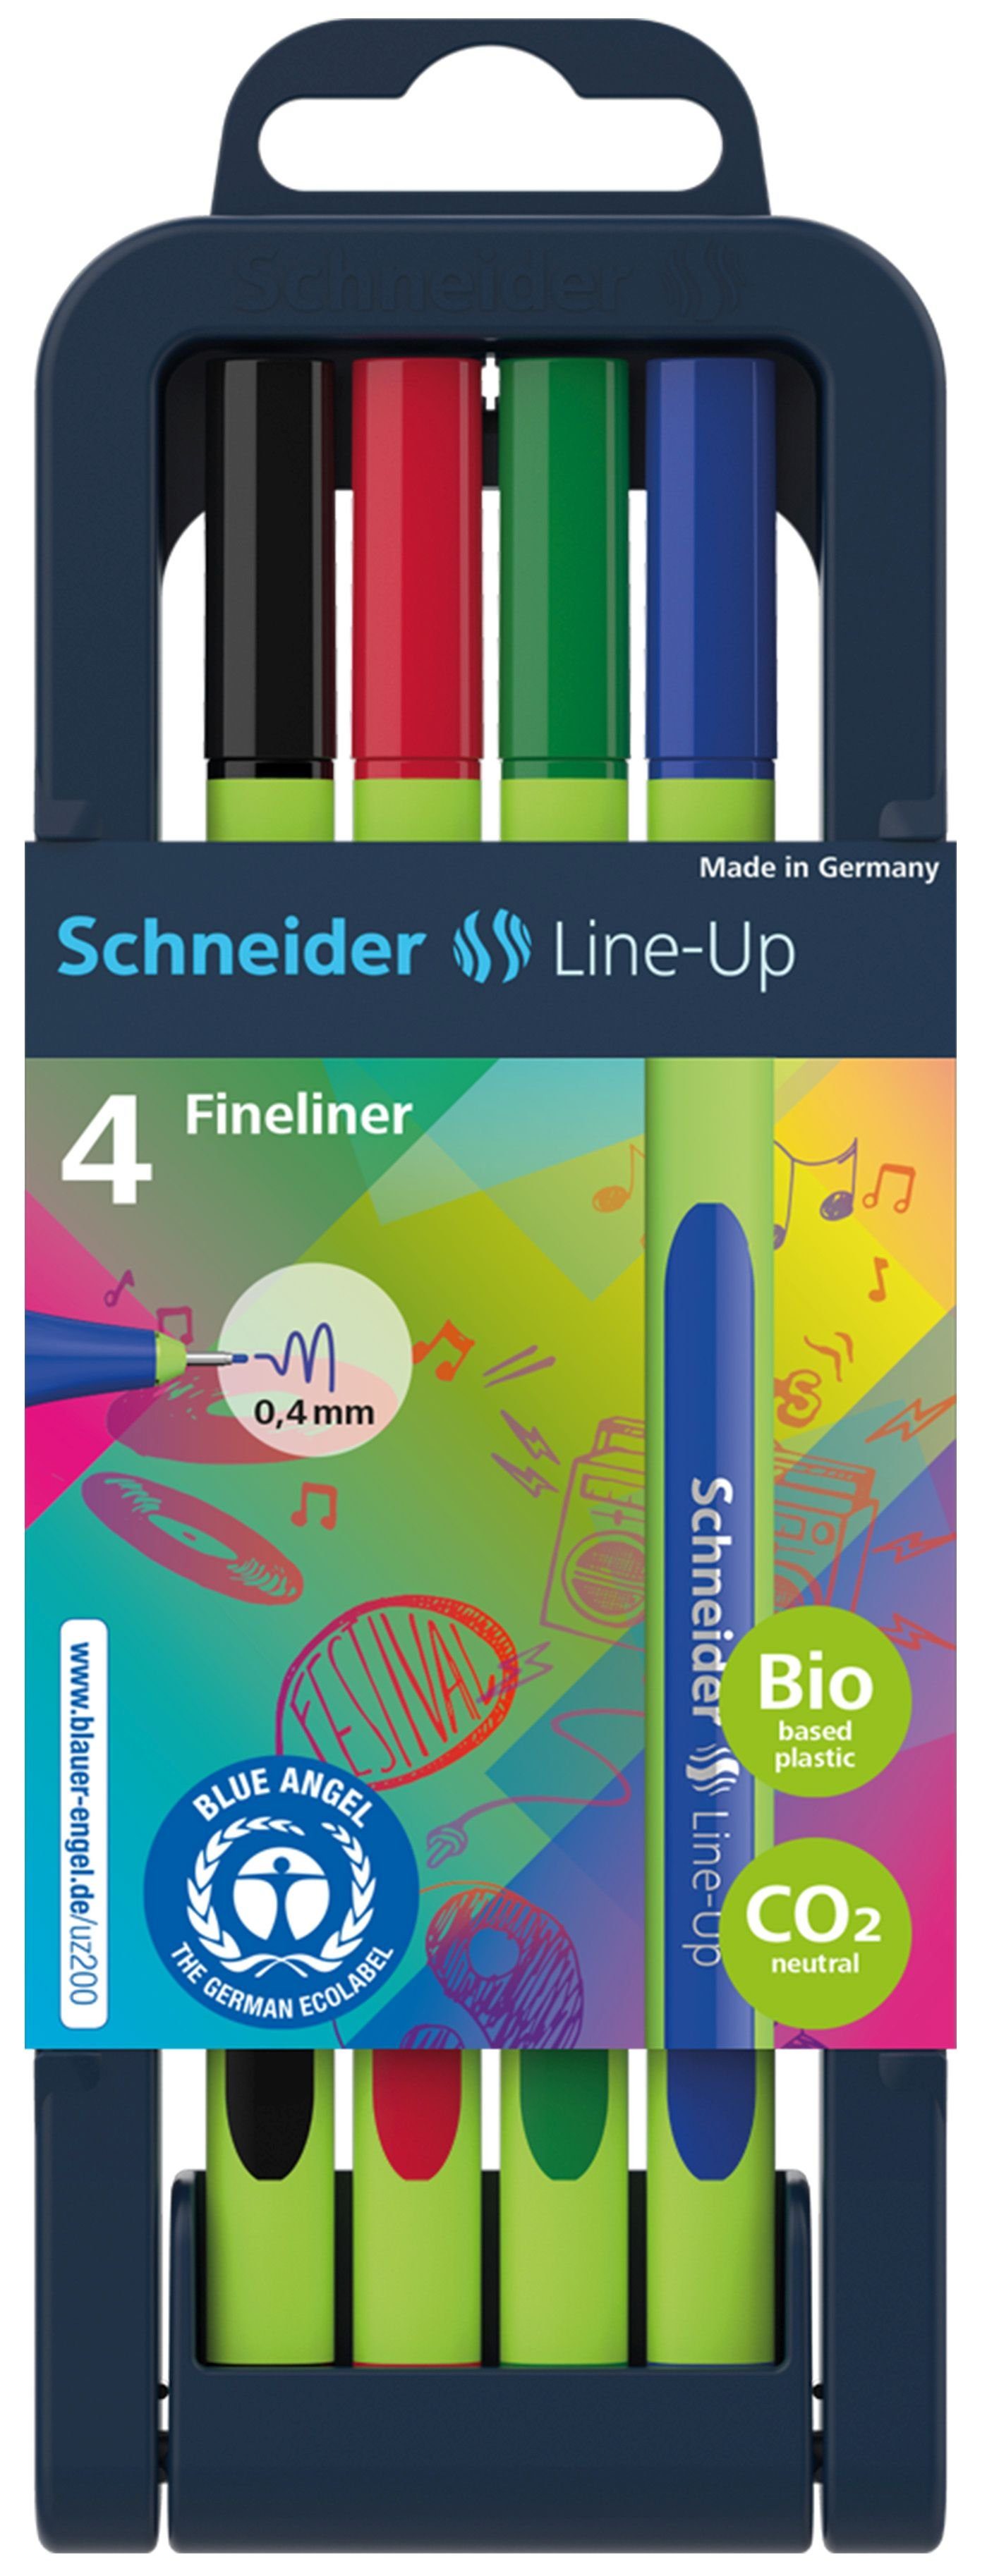 farbsortiert SCHNEIDER 4 Fineliner Line-Up Schneider 0,4 mm Fineliner